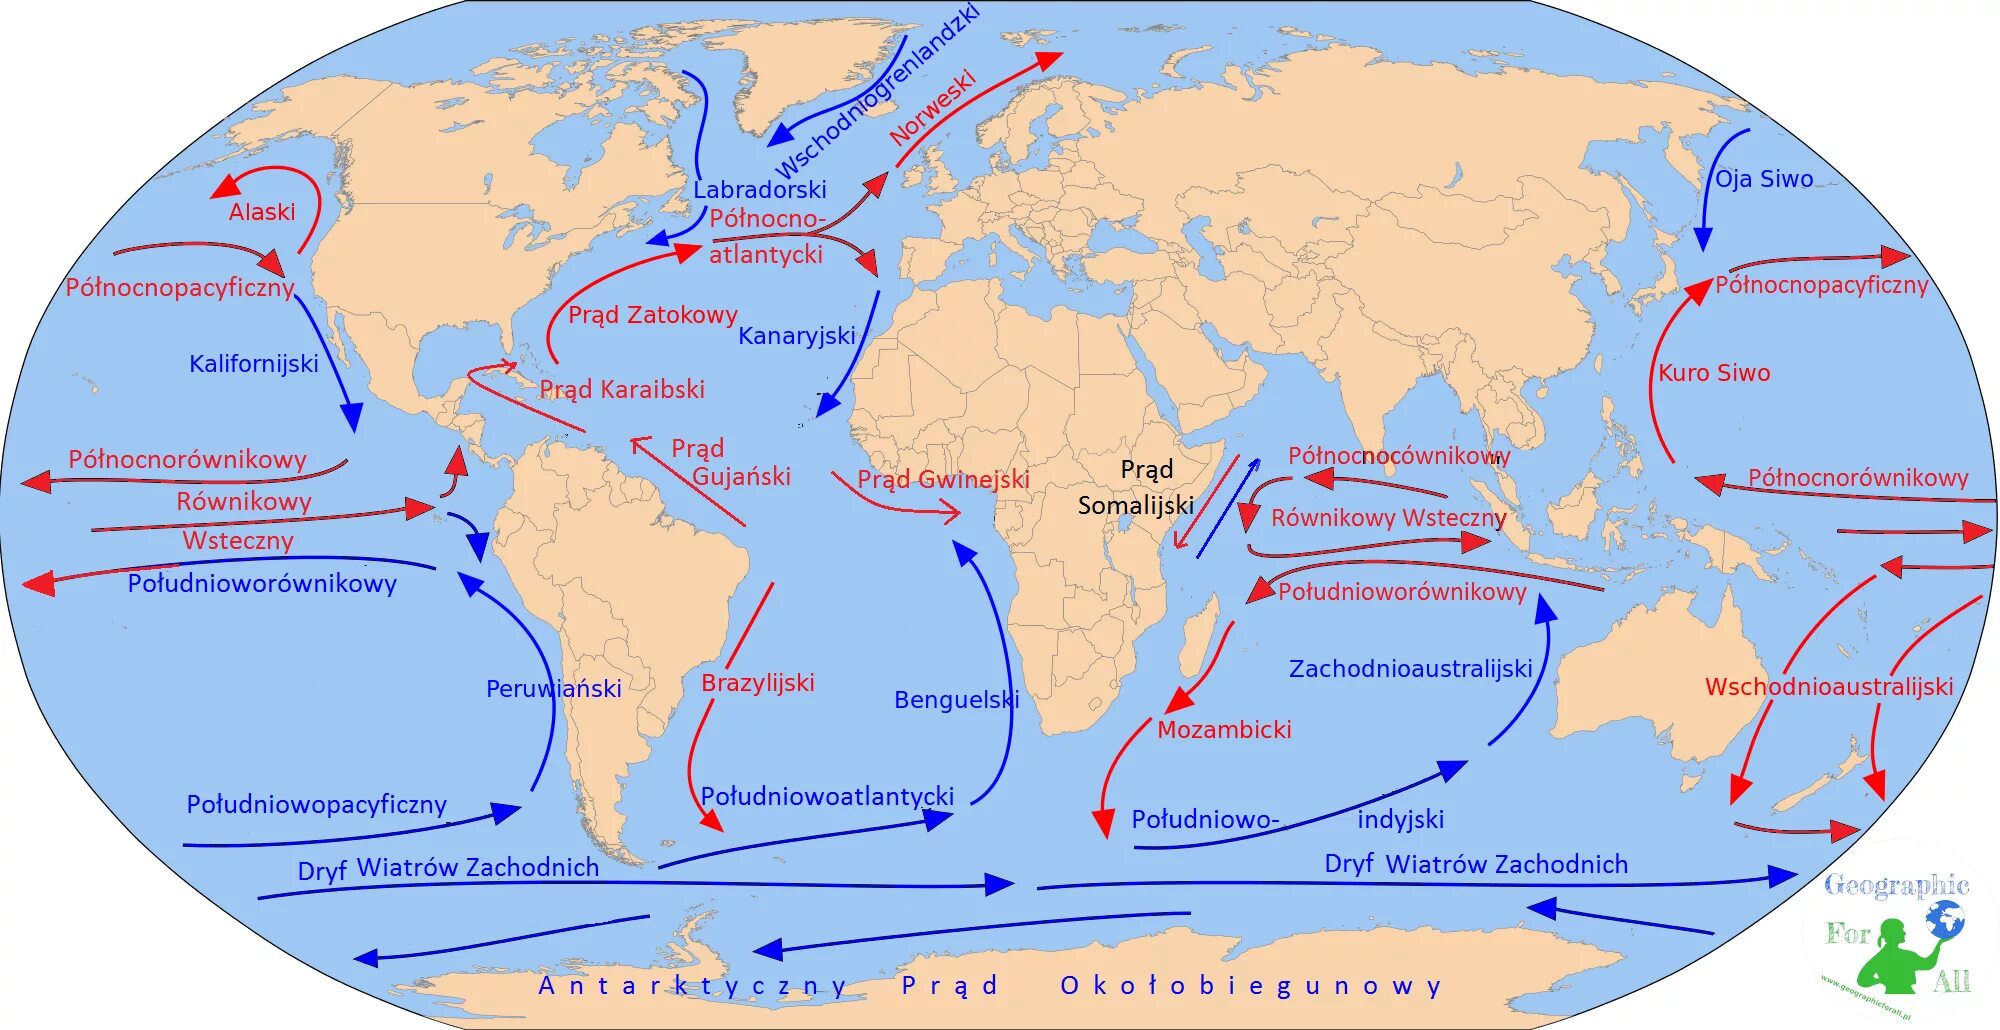 Южное пассатное течение на карте Атлантического океана. Северо атлантическое течение на карте мирового океана. Течение Гольфстрим на карте. Северо пассатное течение на карте Атлантического океана.